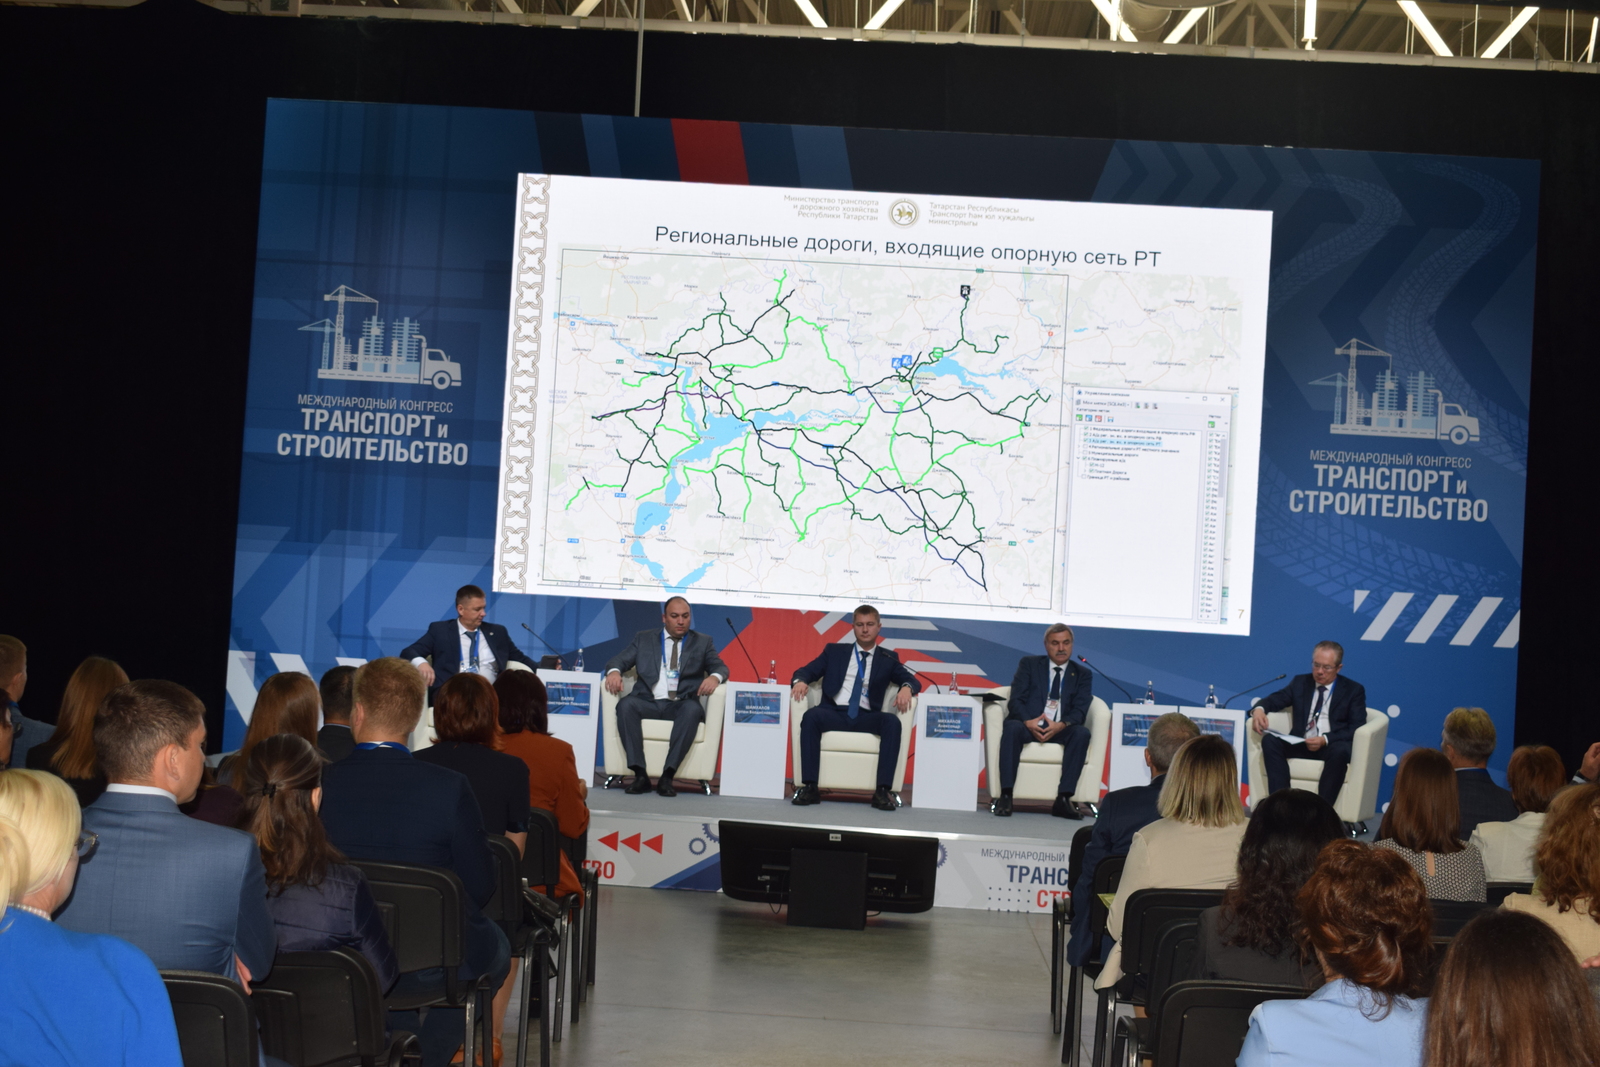 В рамках конгресса «Транспорт и строительство» состоялся семинар «Региональные дорожные артерии в концепции развития федеральных дорог»